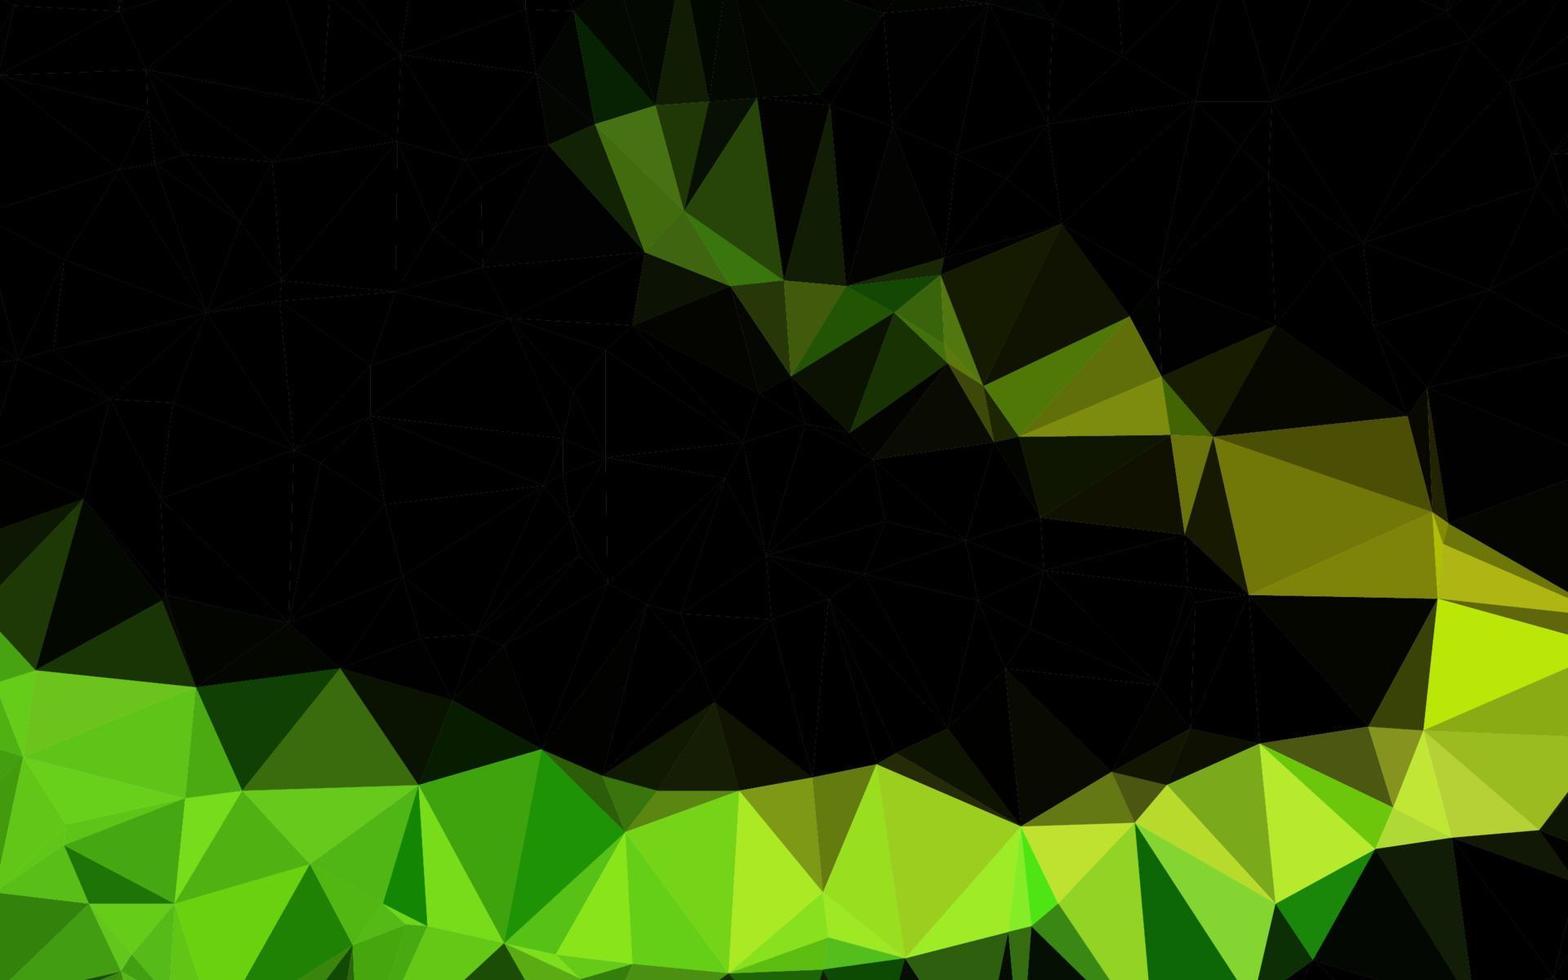 textura poligonal abstrata de vetor verde escuro e amarelo.